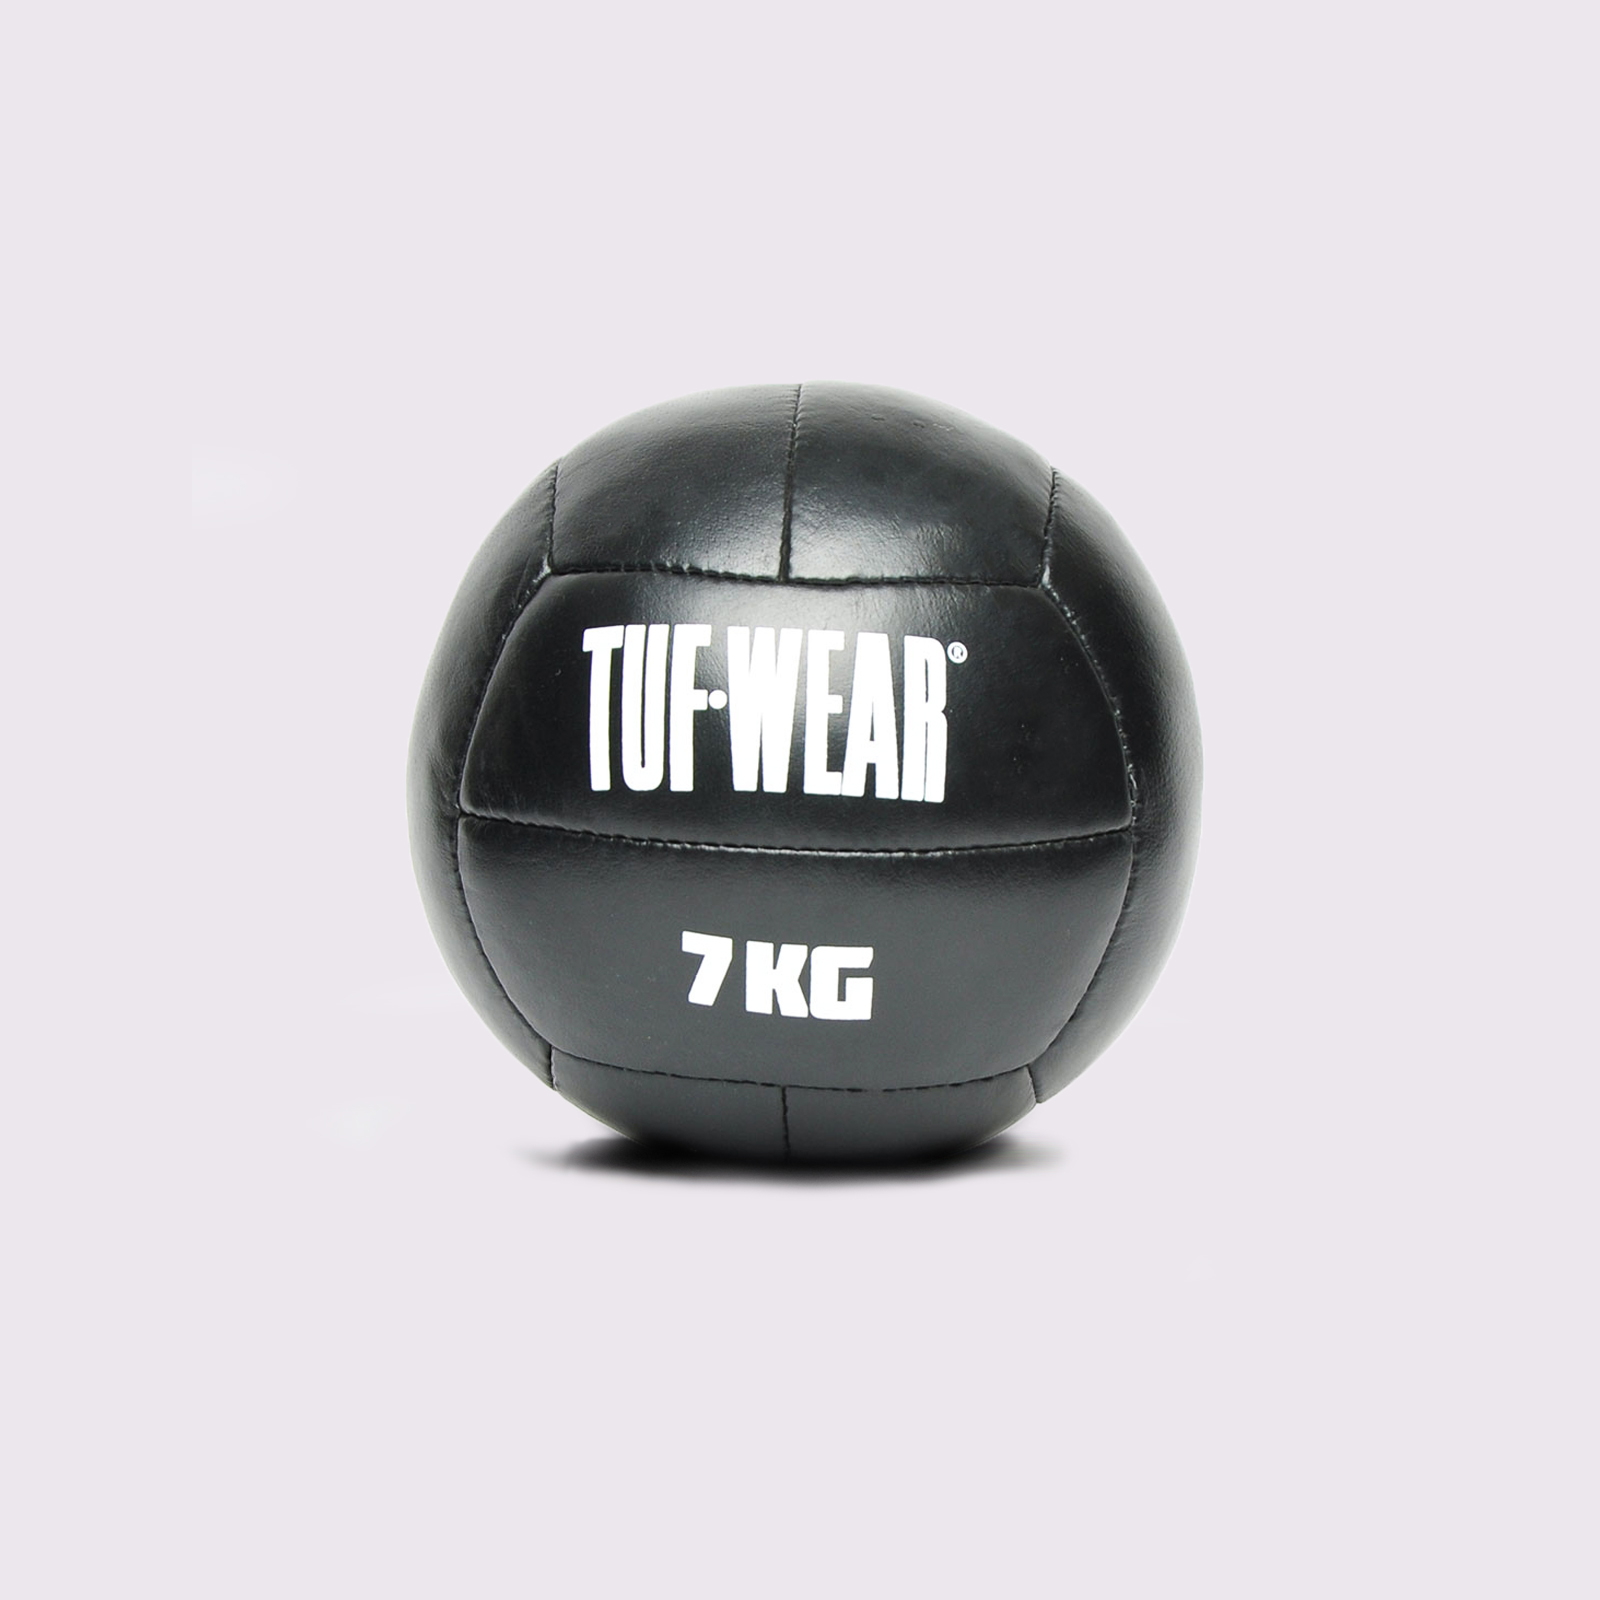 Tuf Wear Leather Medicine Ball 7KG  - TW23657-7KG